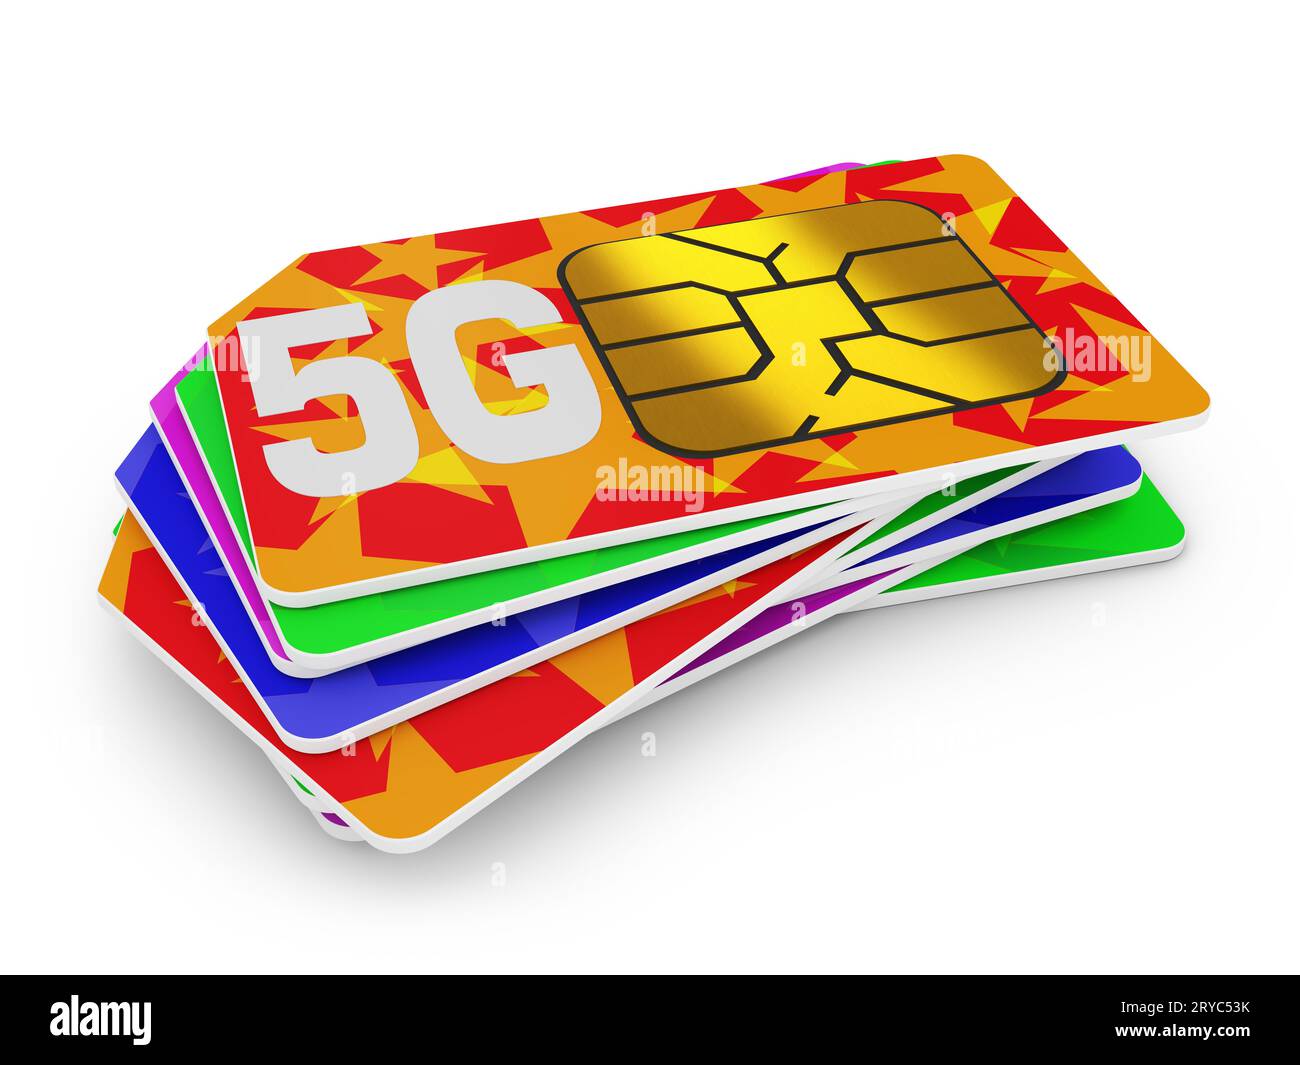 5g sim cards Stock Photo